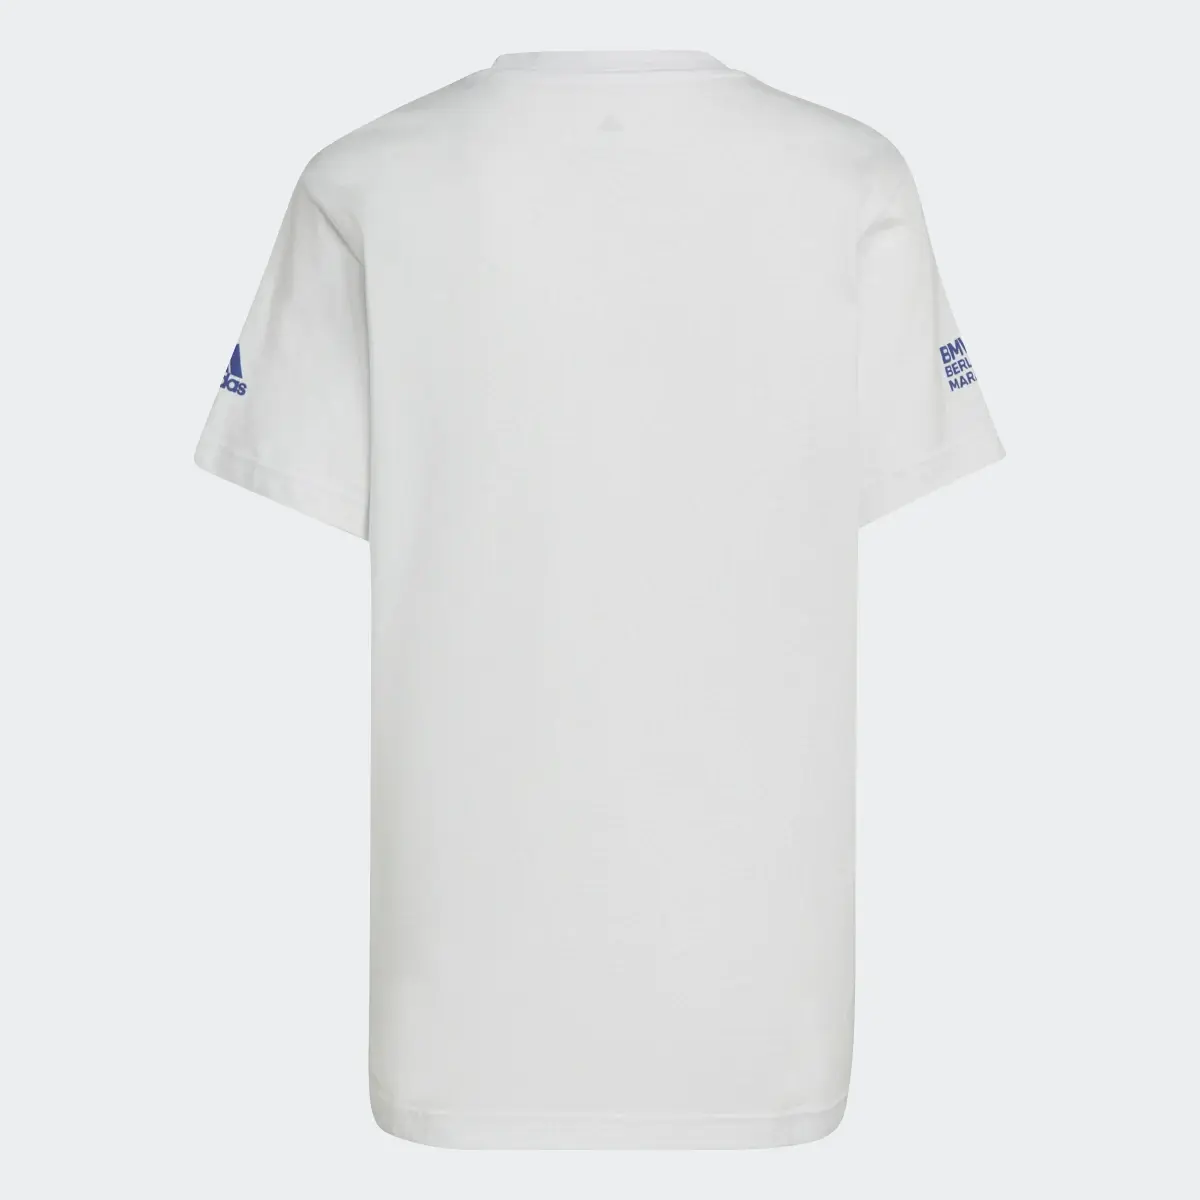 Adidas Running Graphic T-Shirt. 2